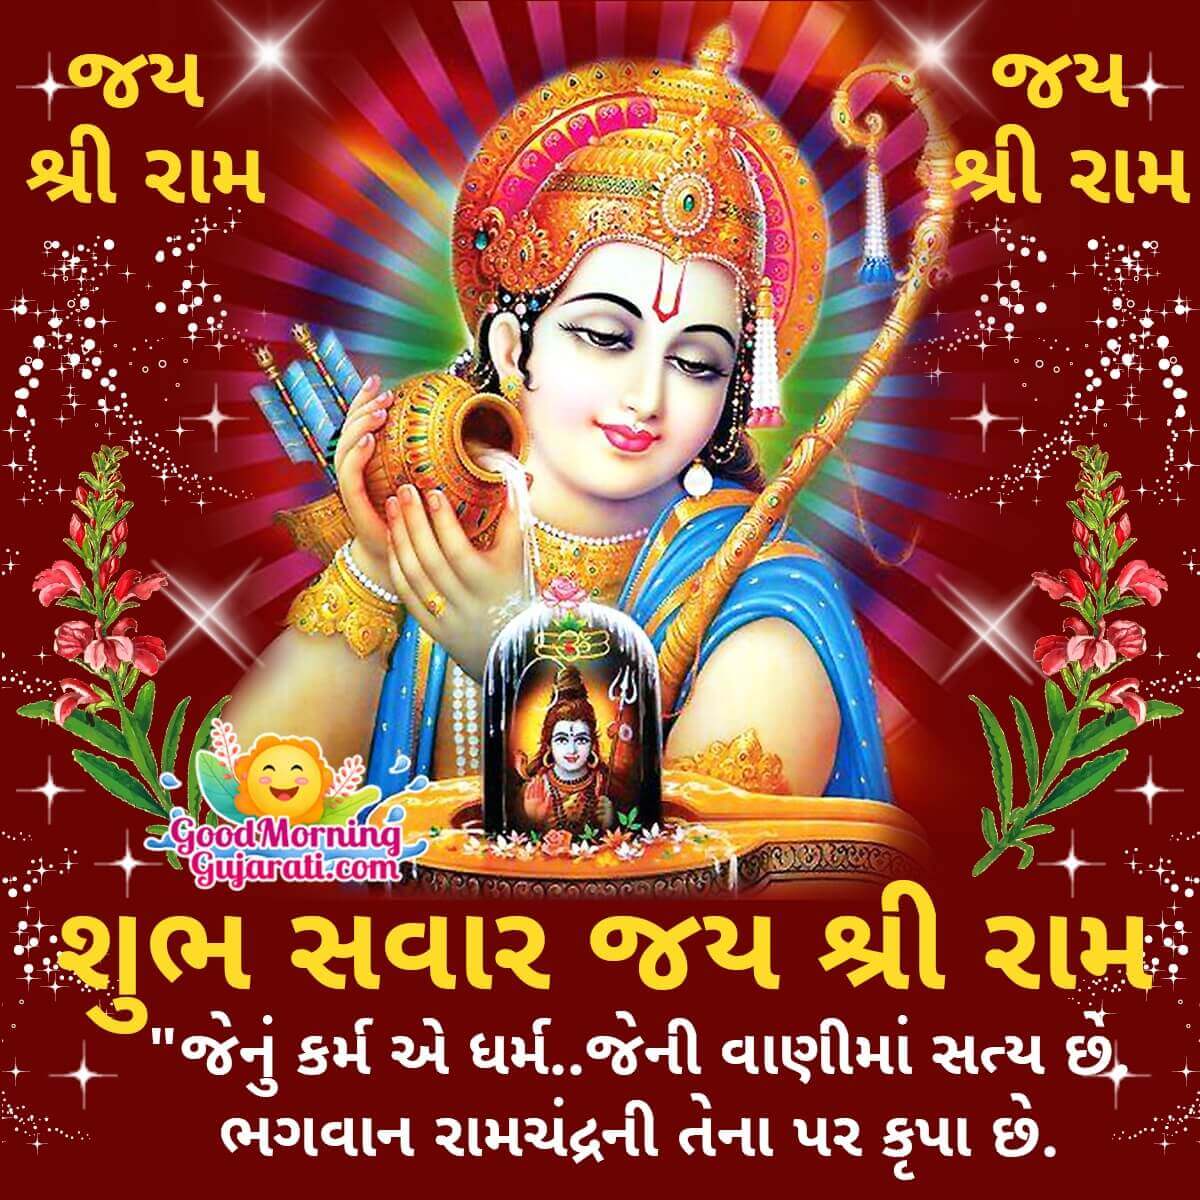 Wonderful Good Morning Shri Ram Gujarati Images